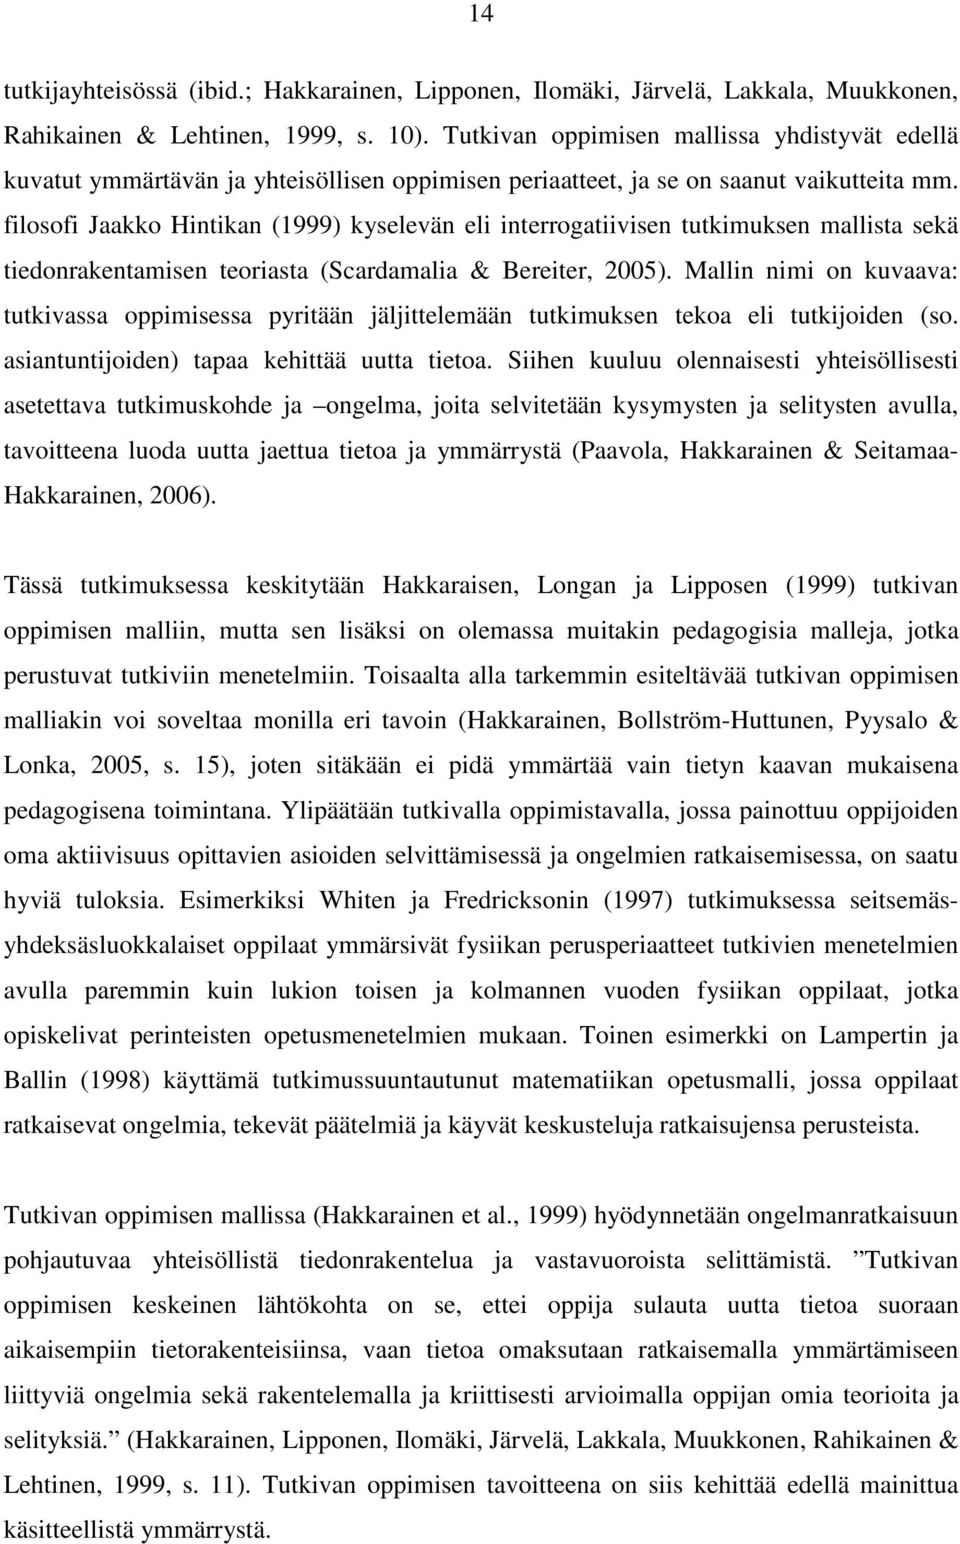 filosofi Jaakko Hintikan (1999) kyselevän eli interrogatiivisen tutkimuksen mallista sekä tiedonrakentamisen teoriasta (Scardamalia & Bereiter, 2005).